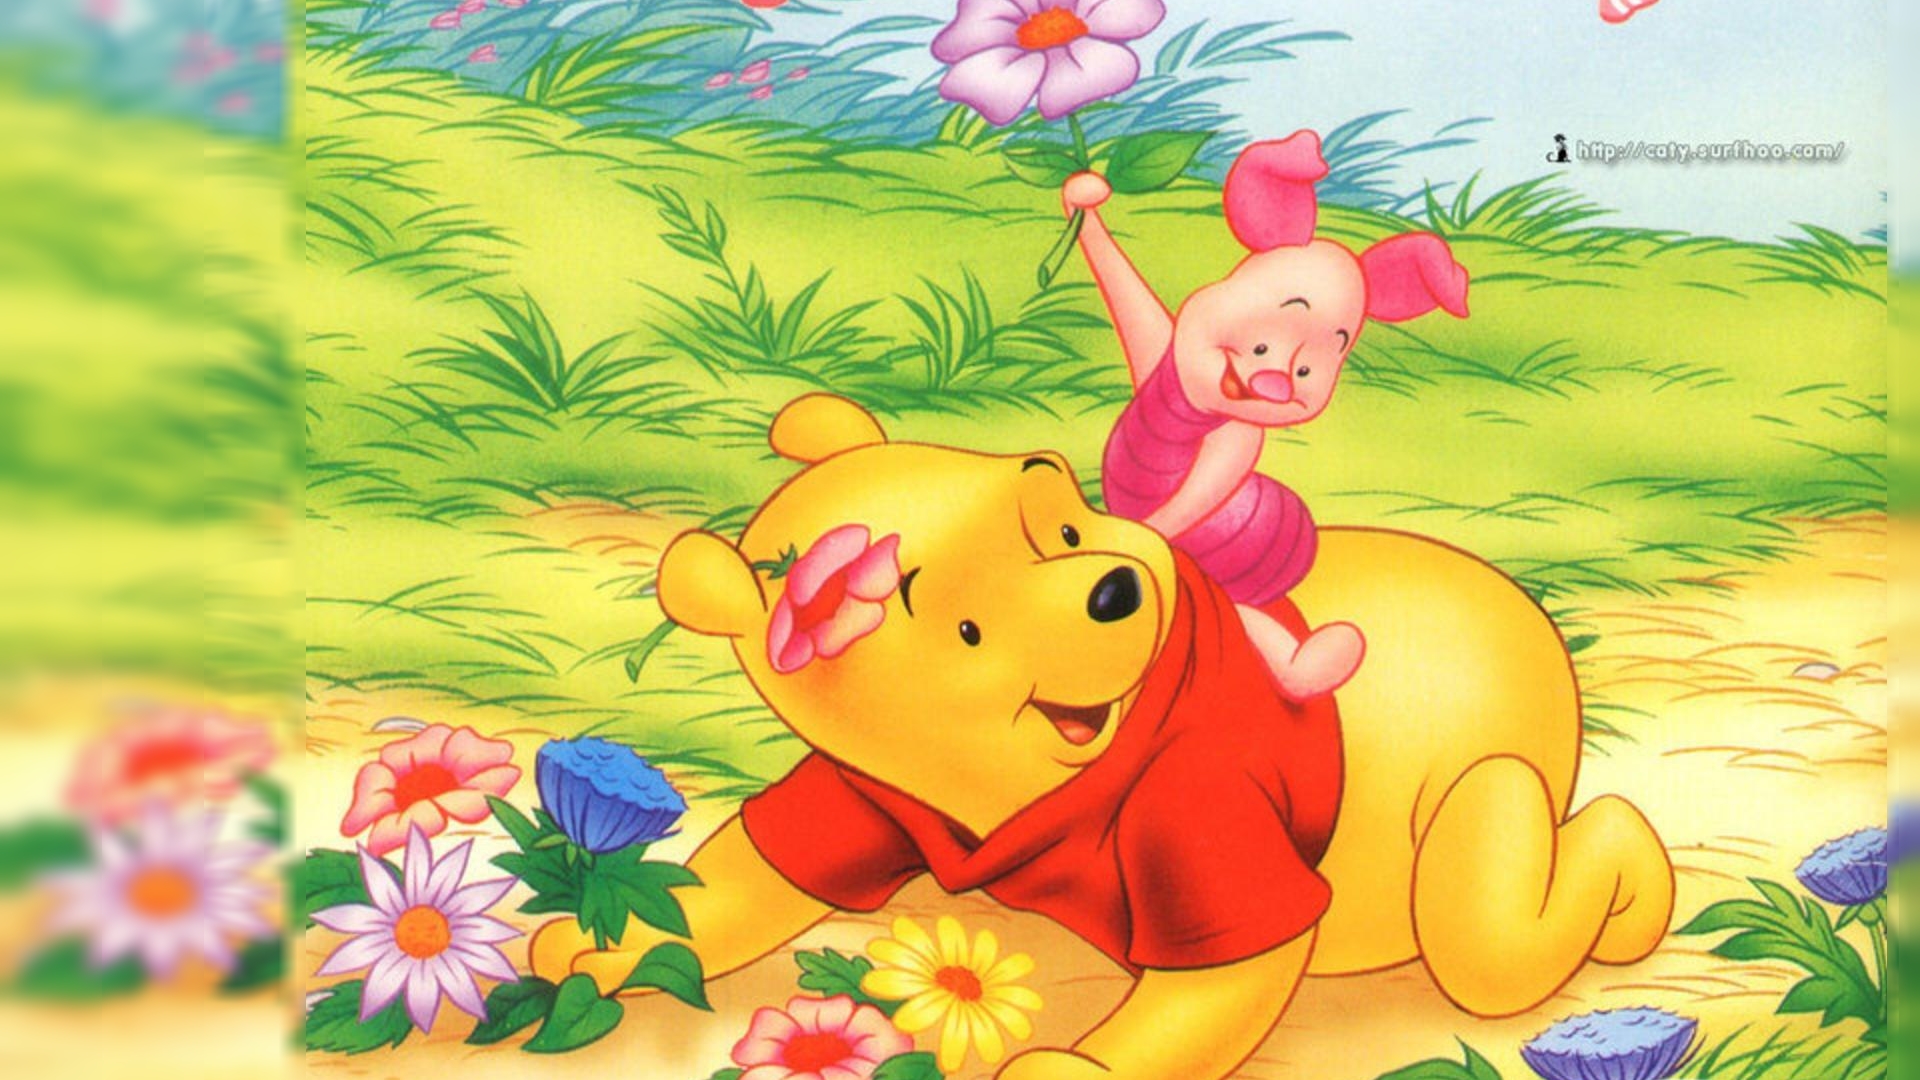 画像 ディズニー くまのプーさん Winnie The Pooh Pcデスクトップ壁紙 画像 高画質 Naver まとめ